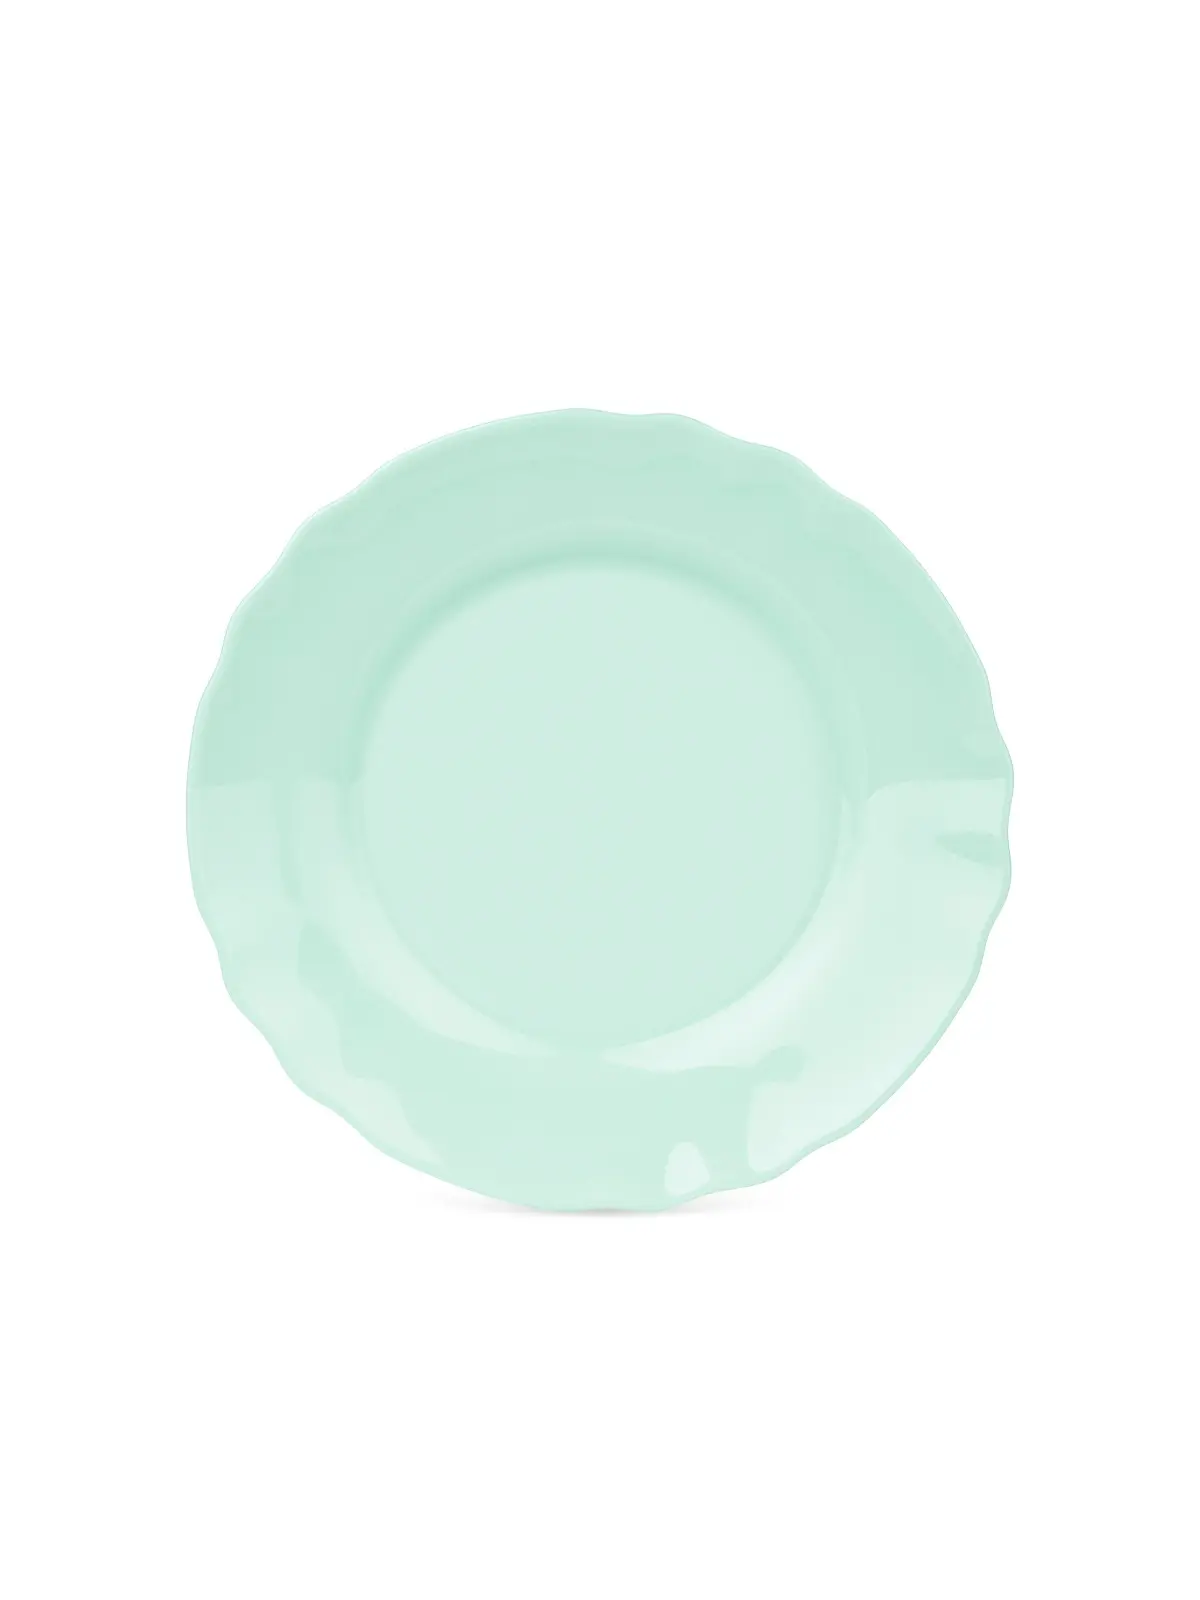 Десертная тарелка Louis XV Turquoise 19 см Luminarc Q3683